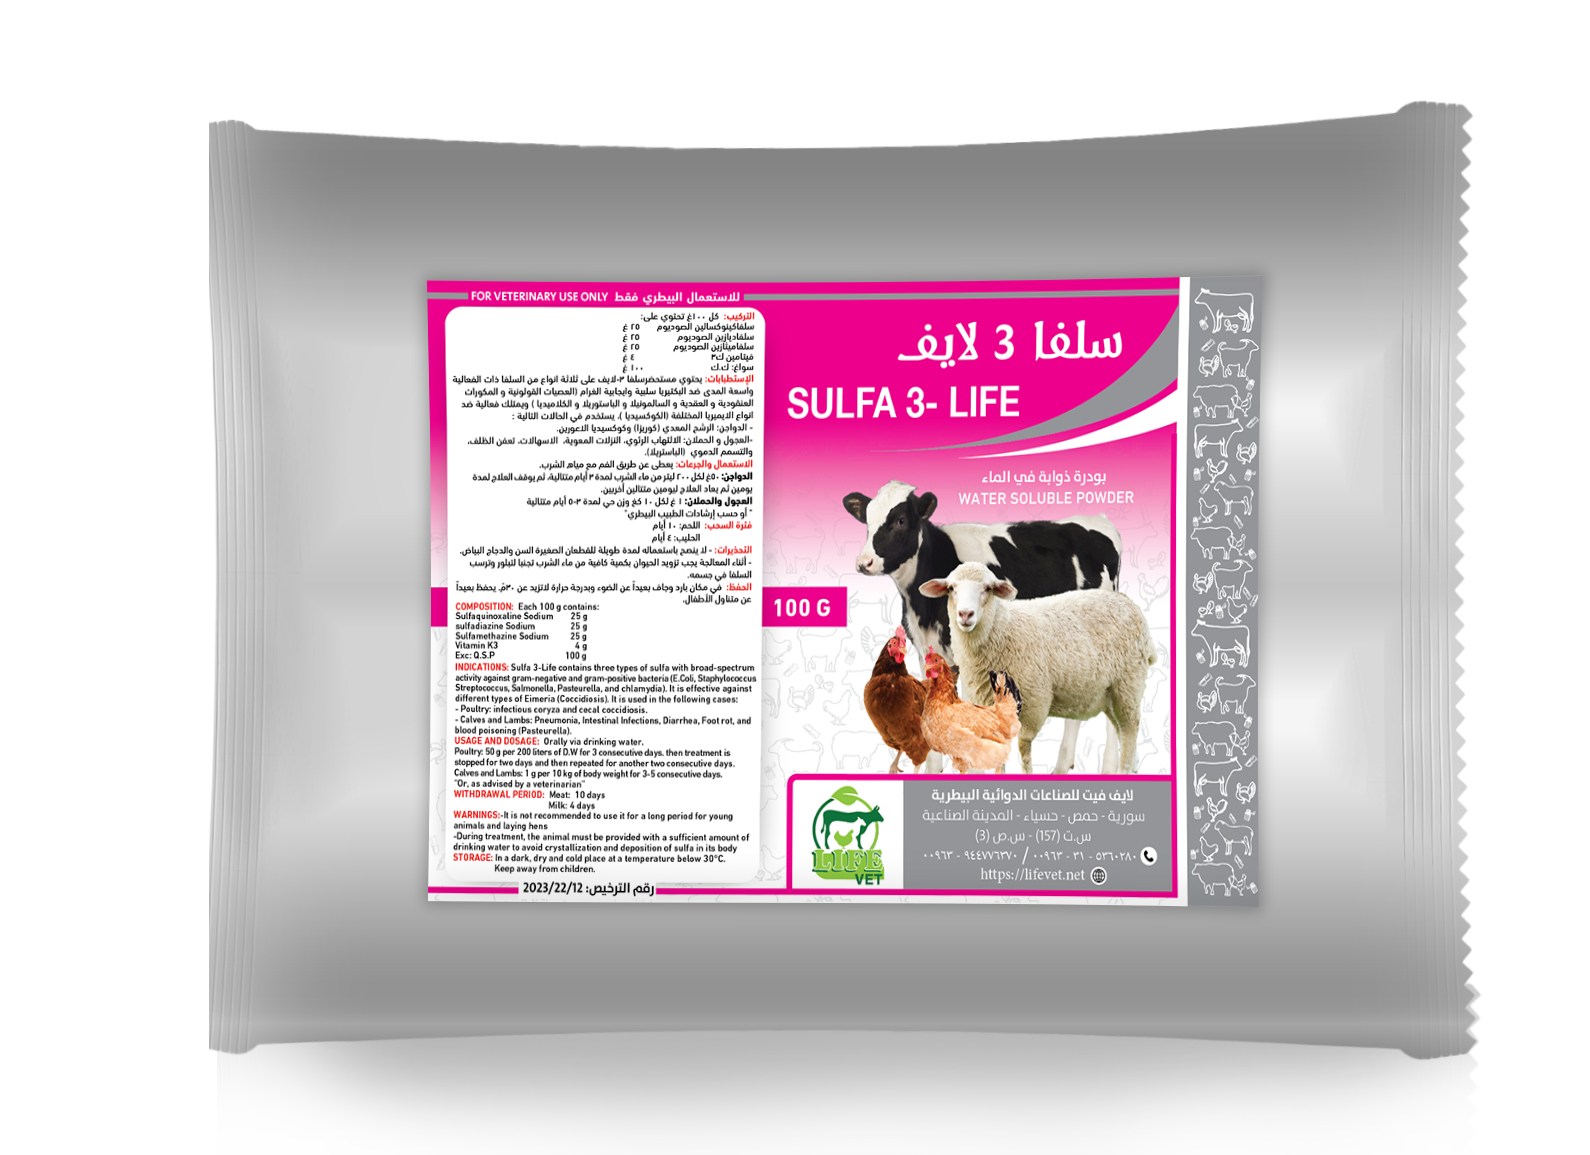 sulfa-3-life